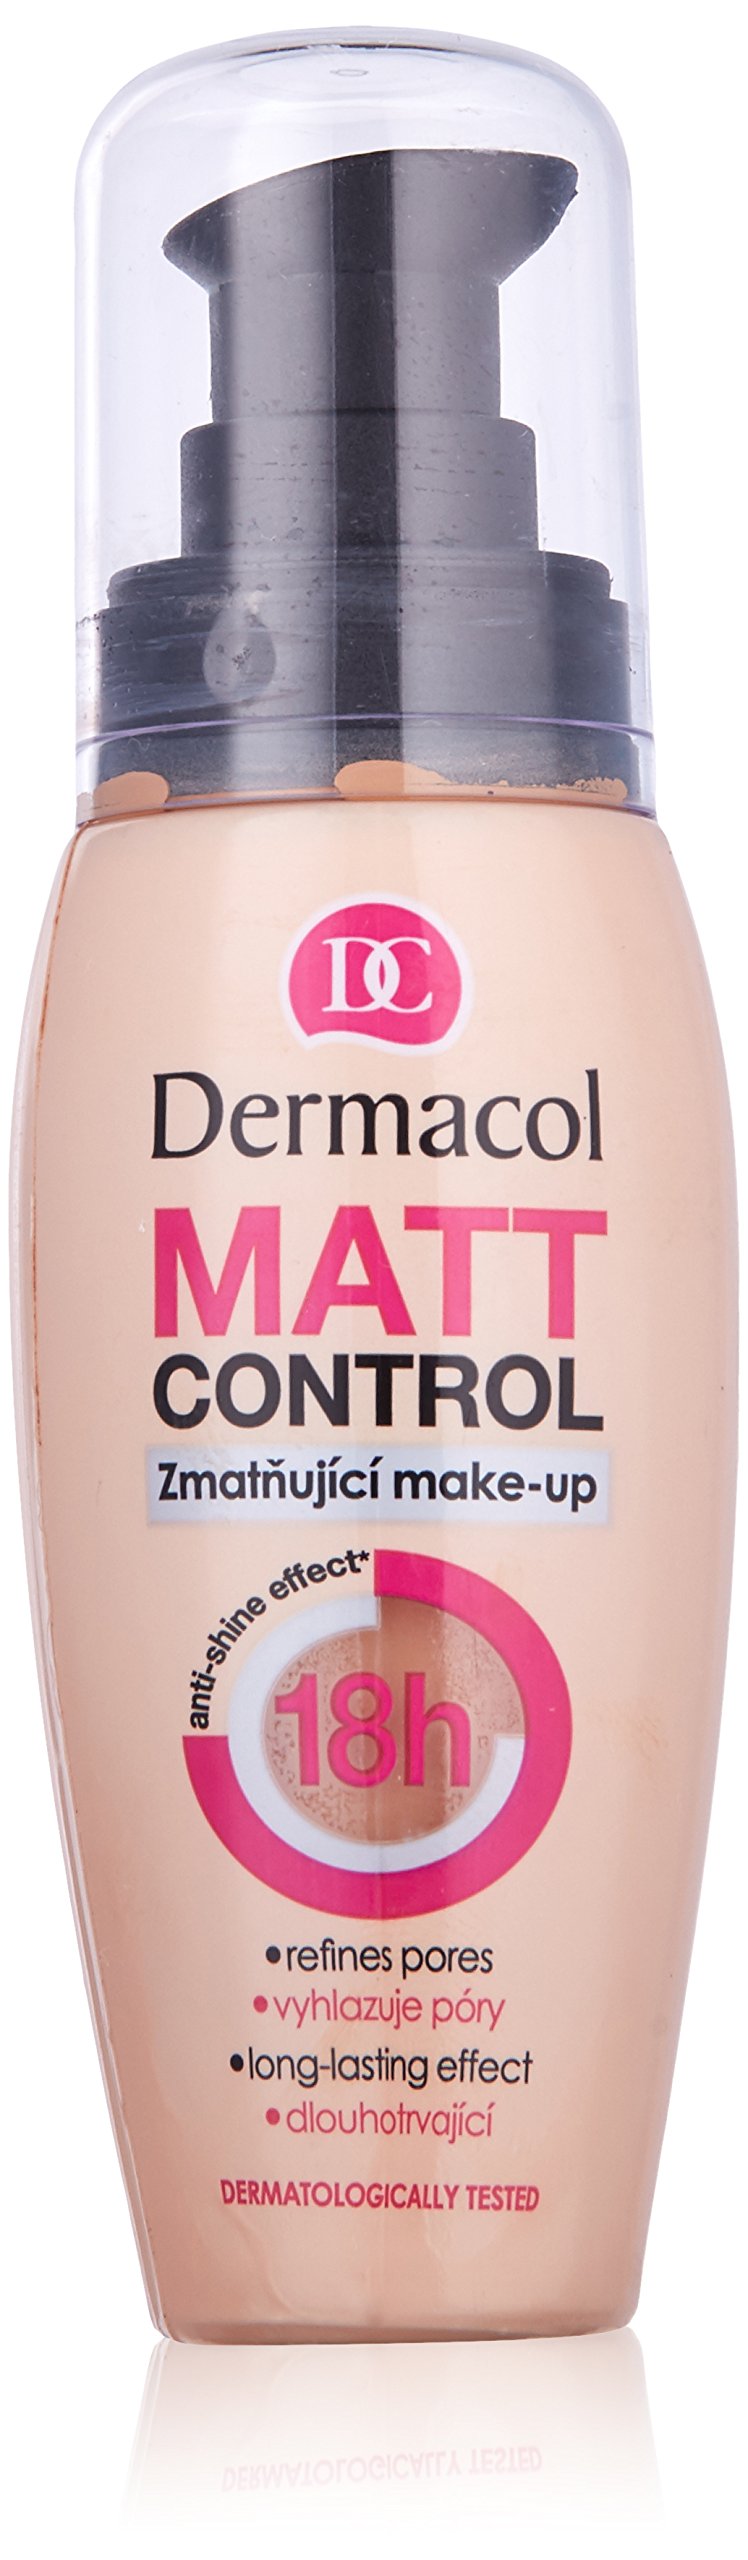 Dermacol Matt Control Make-Up No.4